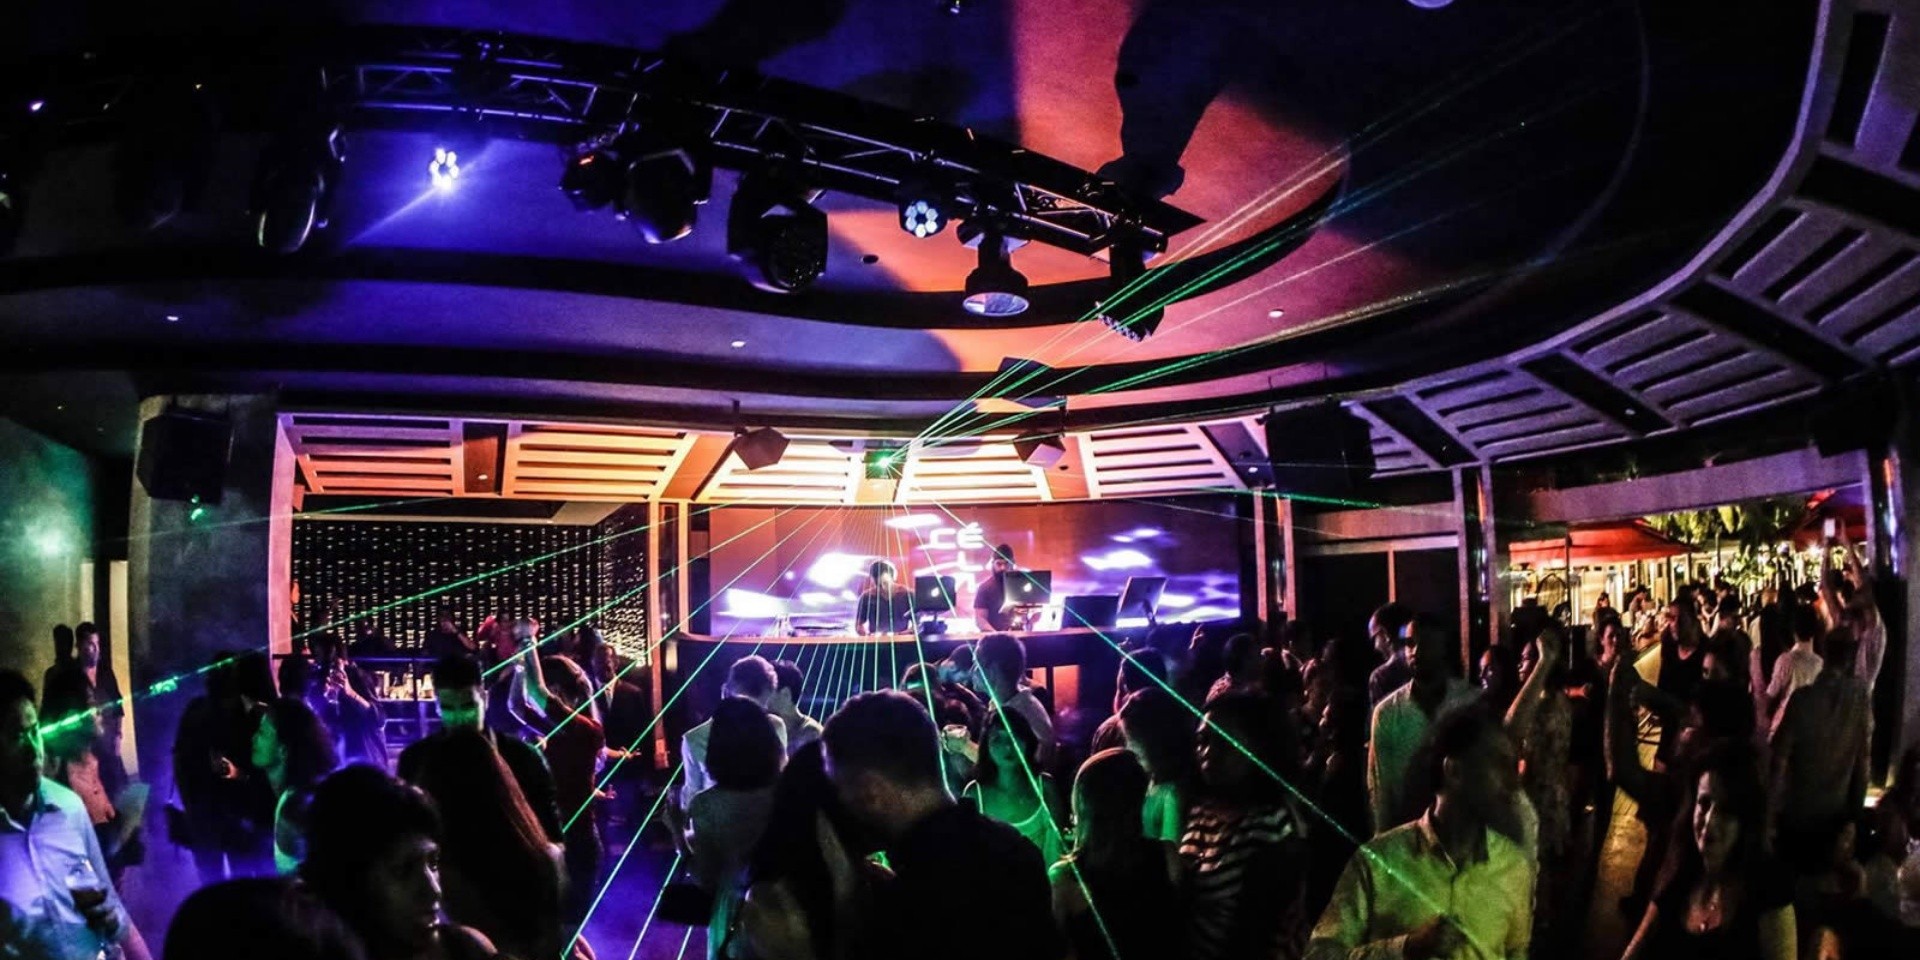 Five reasons why CÉ LA VI belongs on DJ Mag's Top 100 Nightclubs